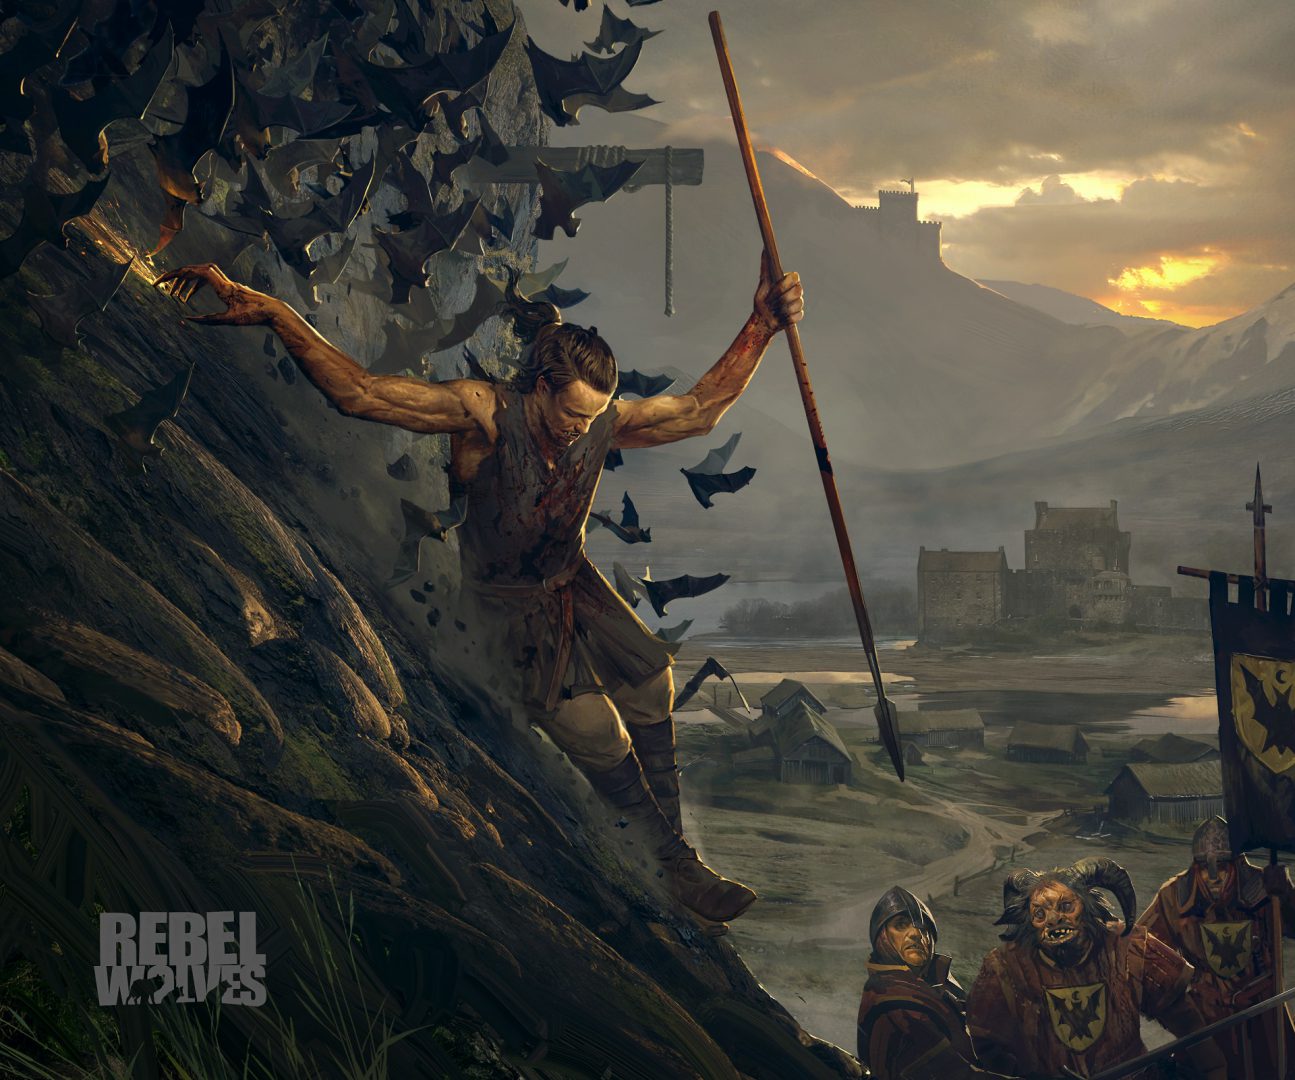 Rebel Wolves: El padre de The Witcher y Cyberpunk tiene nuevo RPG en desarrollo con UE5 - Konrad Tomaszkiewicz, Director de juegos como The Witcher 3 o Cybeprunk 2077 funda su nuevo estudio y anuncia su primer RPG con Unreal Engine 5.